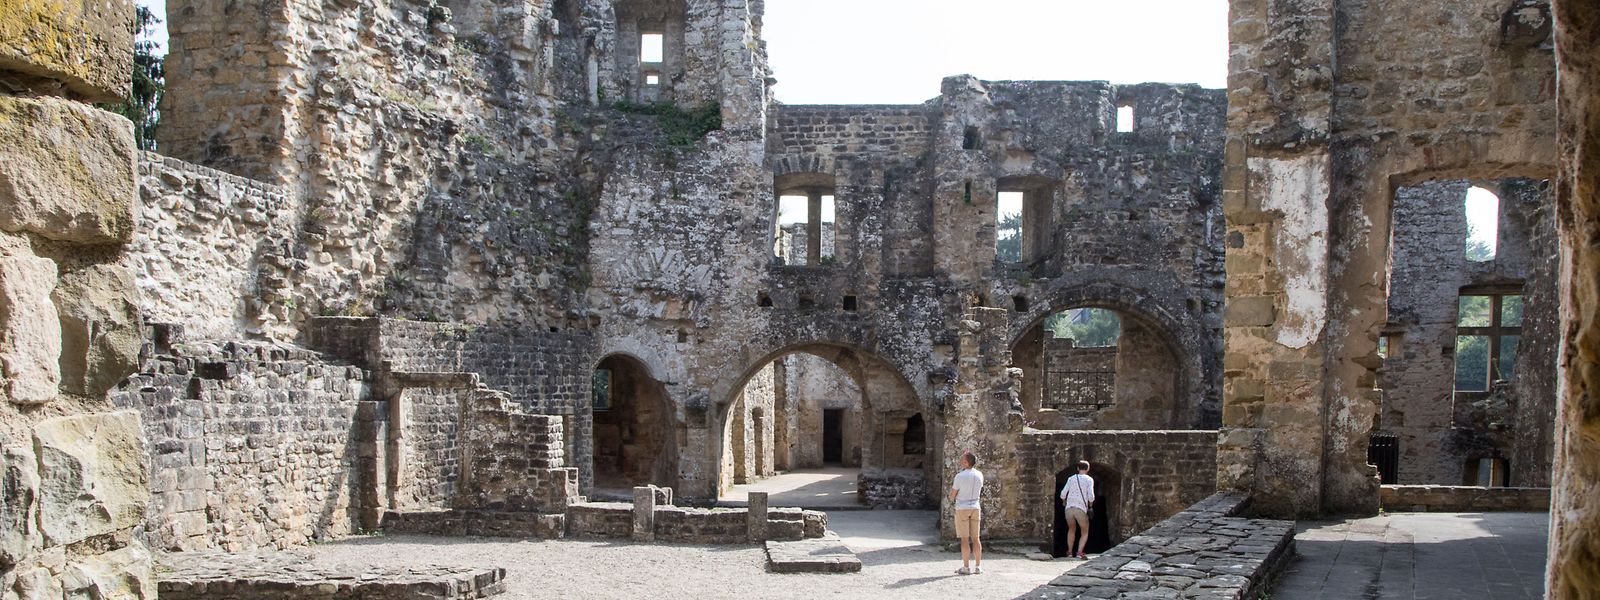 Die Ruine der Burg Beaufort kann täglich besucht werden. Sie ist ein beliebtes Ziel bei Wanderern. 